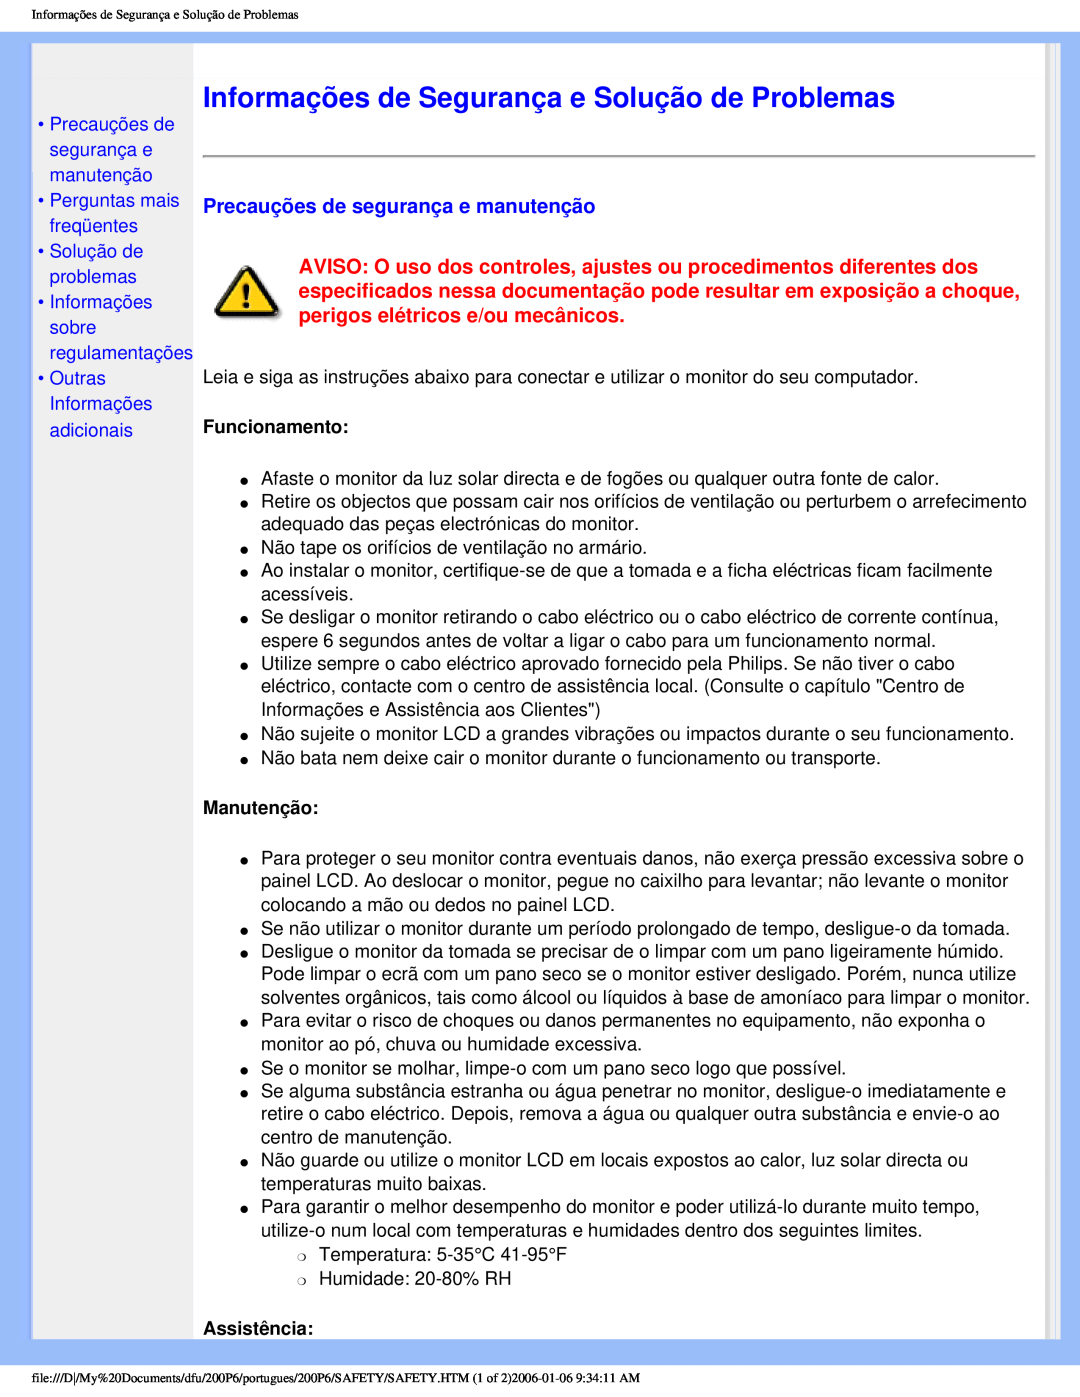 Philips 200P6 Informações de Segurança e Solução de Problemas, Precauções de segurança e manutenção, Funcionamento 